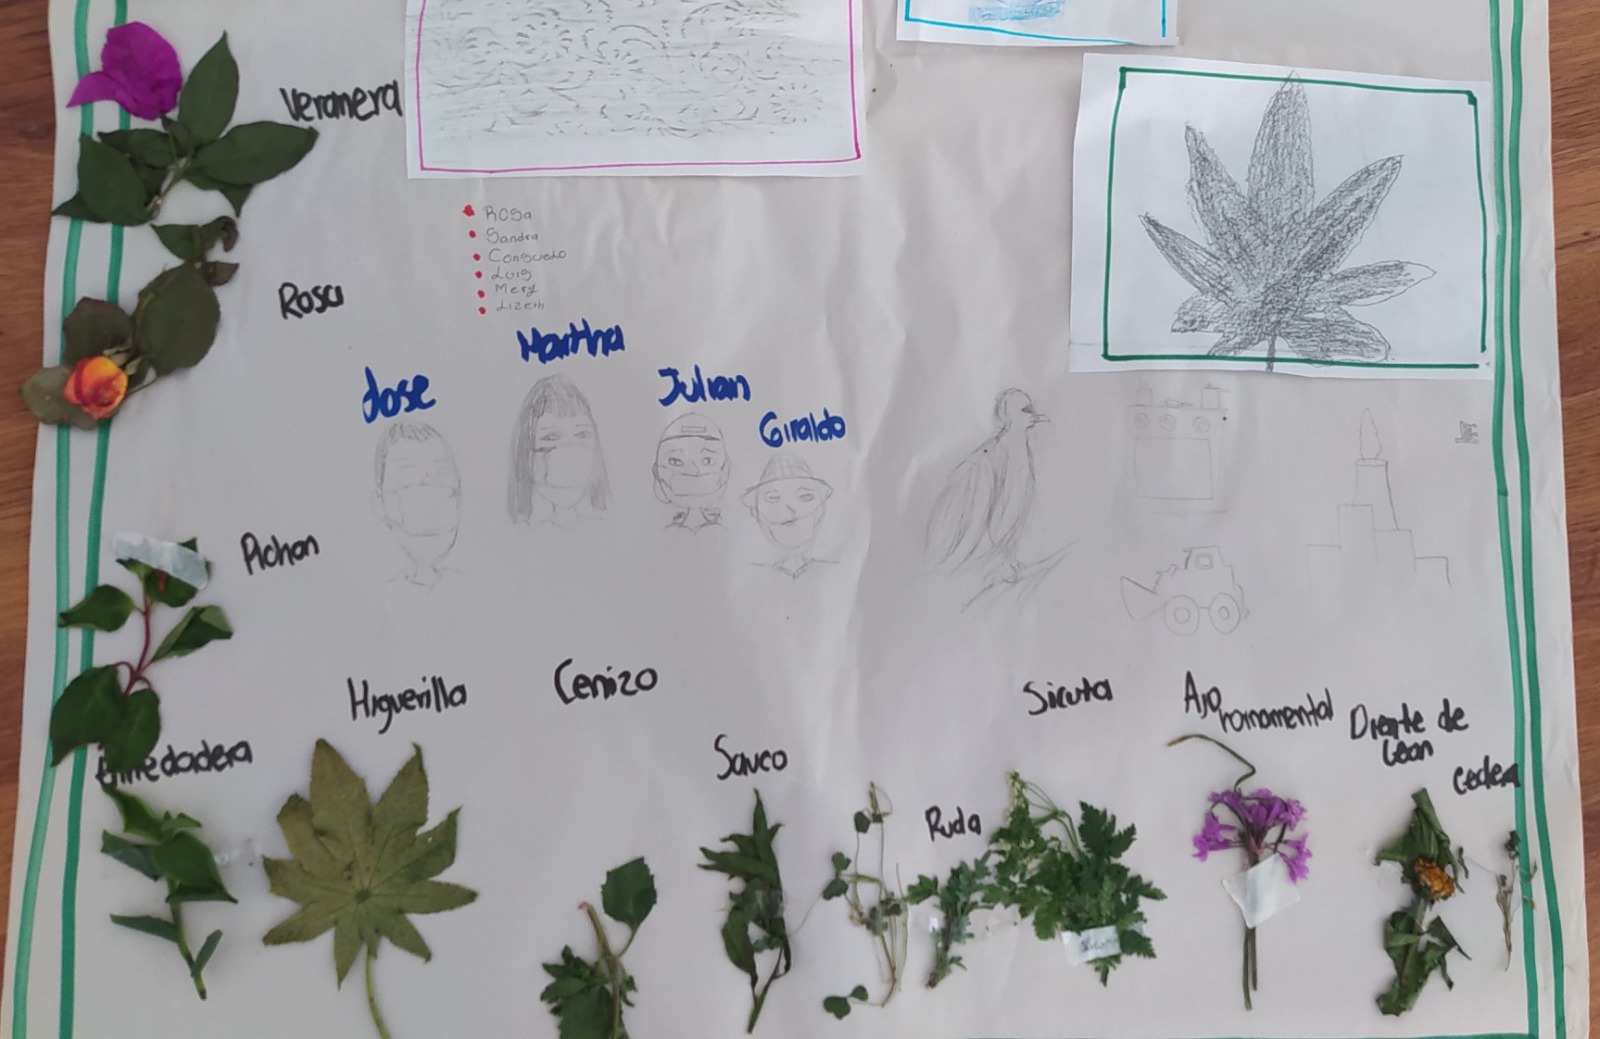 Cartelera con distintos tipos de hojas de plantas identificadas